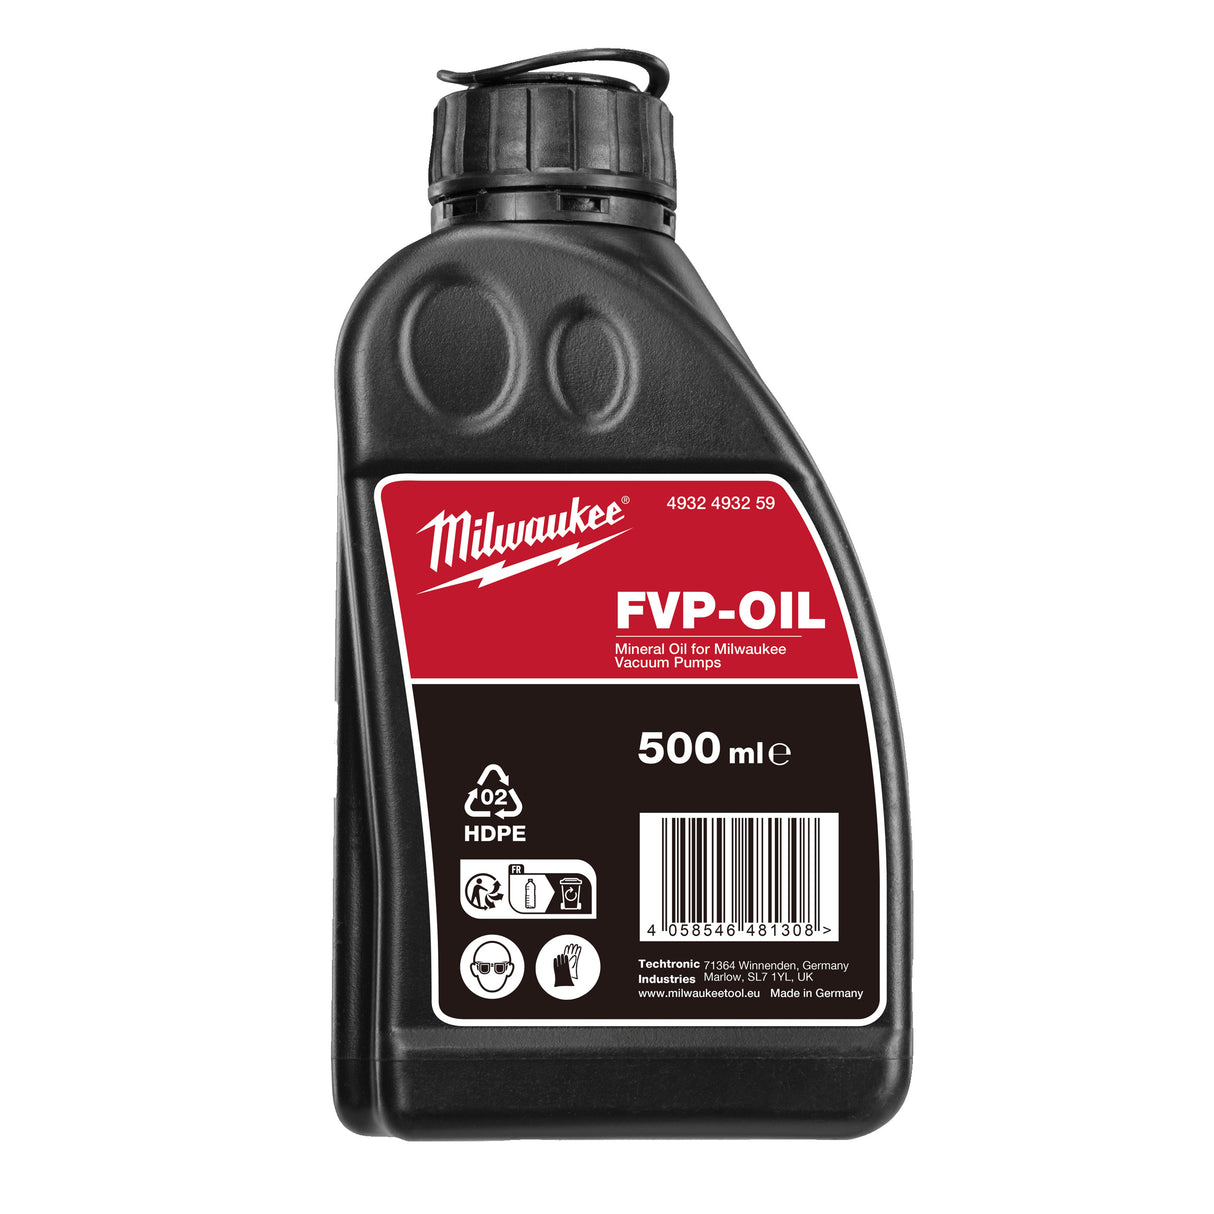 Milwaukee Mineralöl VP-OIL 4932493259 roteswerkzeug